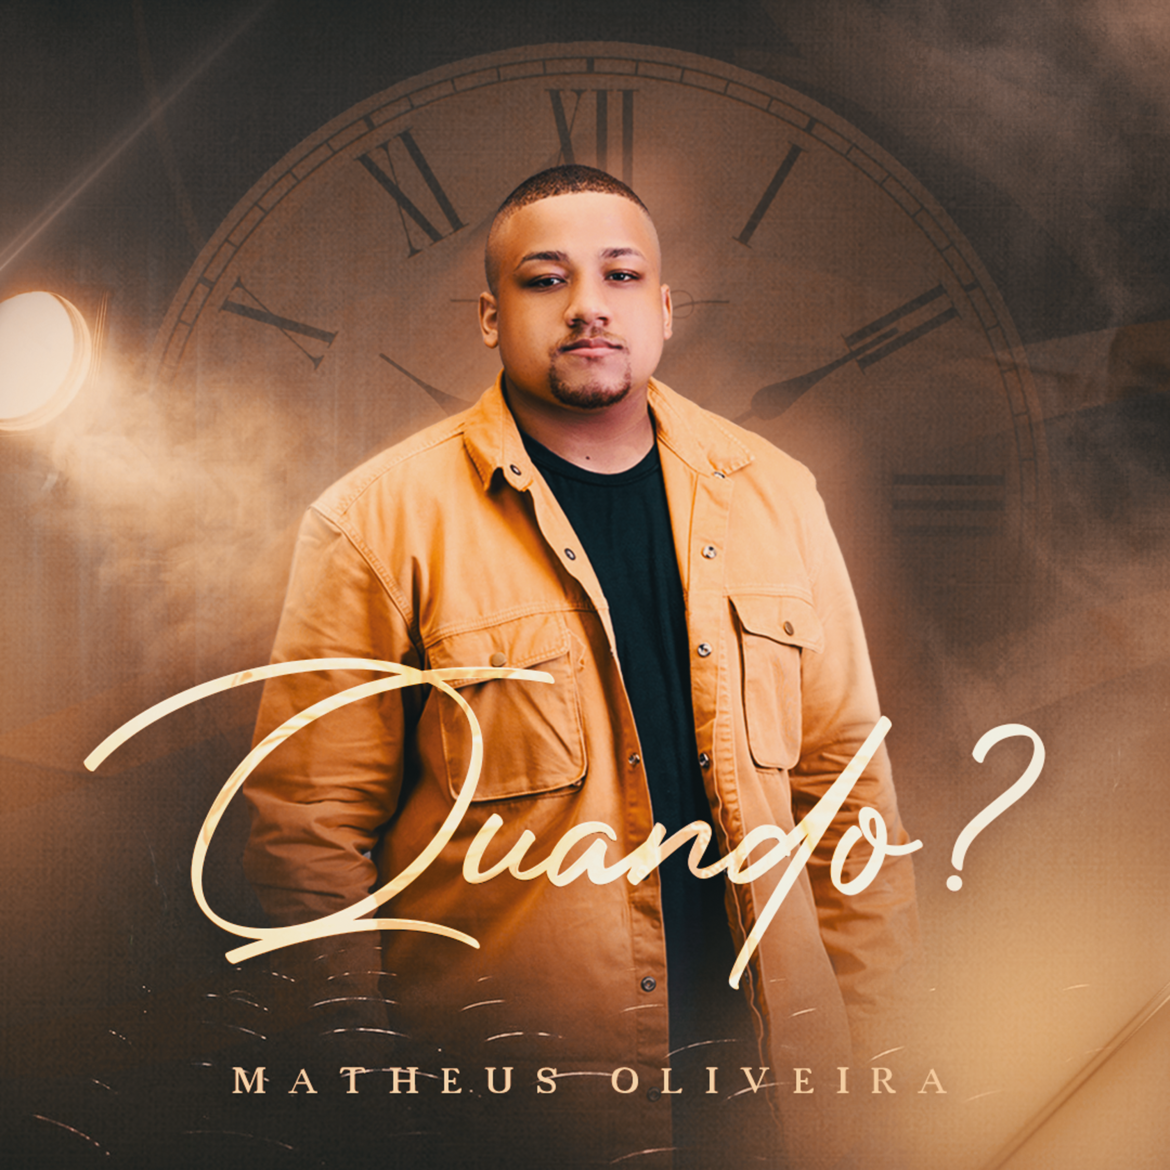 Matheus Oliveira lança single e videoclipe “Quando?” pela Graça Music